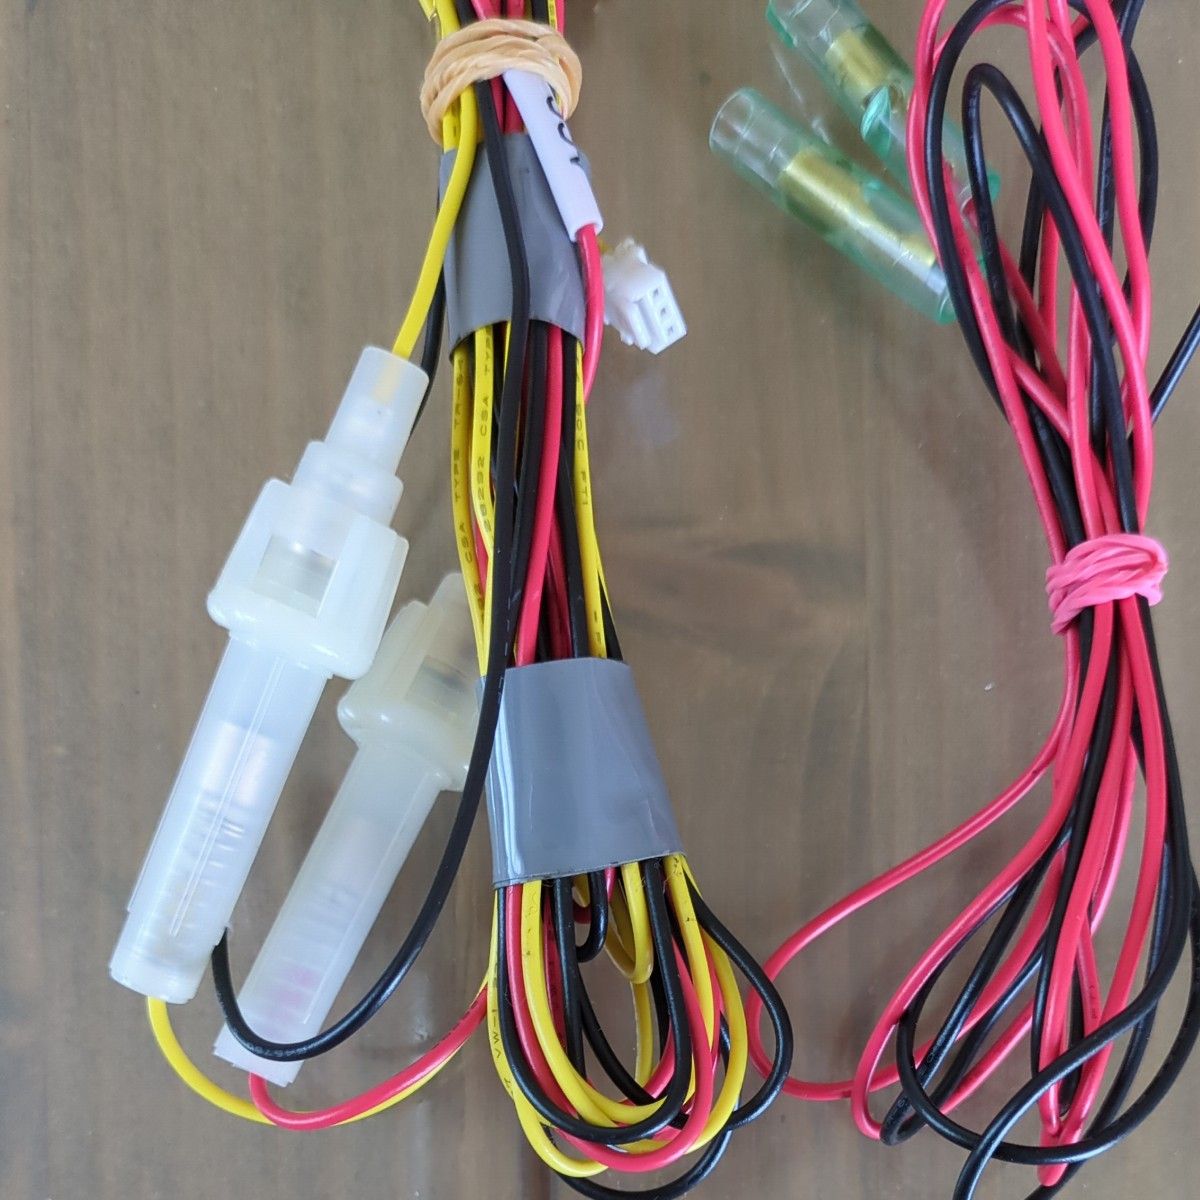 Yupiteru ユピテル 電圧監視機能付 電源ユニットOP-VMU01 VMU01 ドライブレコーダー専用 駐車記録用オプション